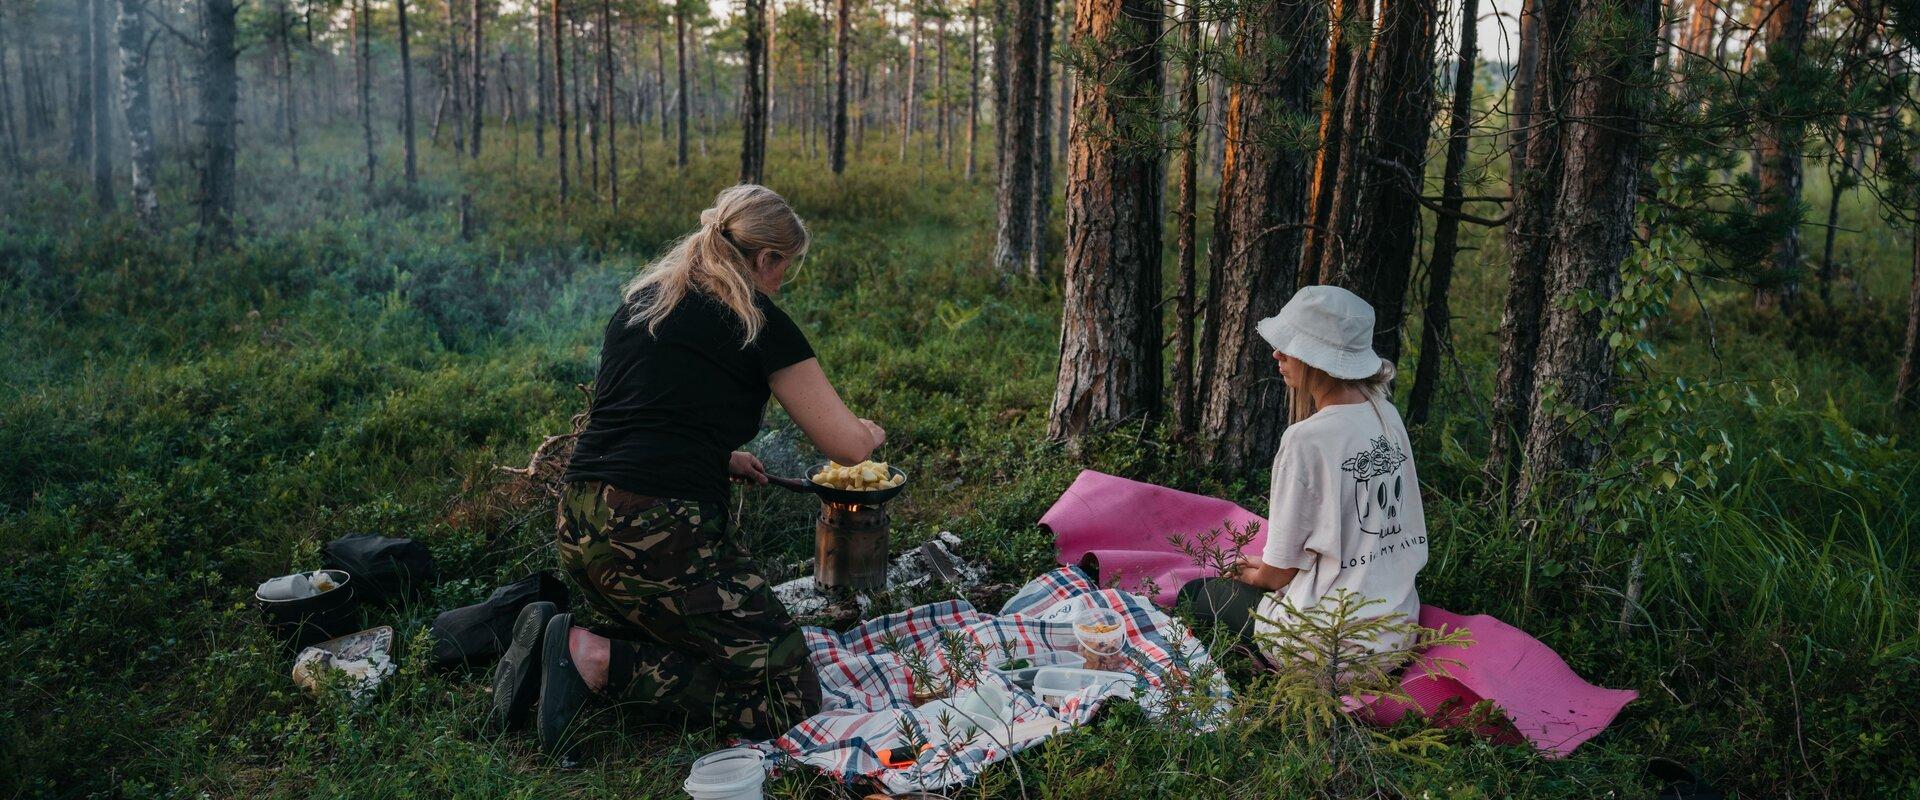 Pildil rabas toitu valmistavad ja pikniku pidavad inimesed